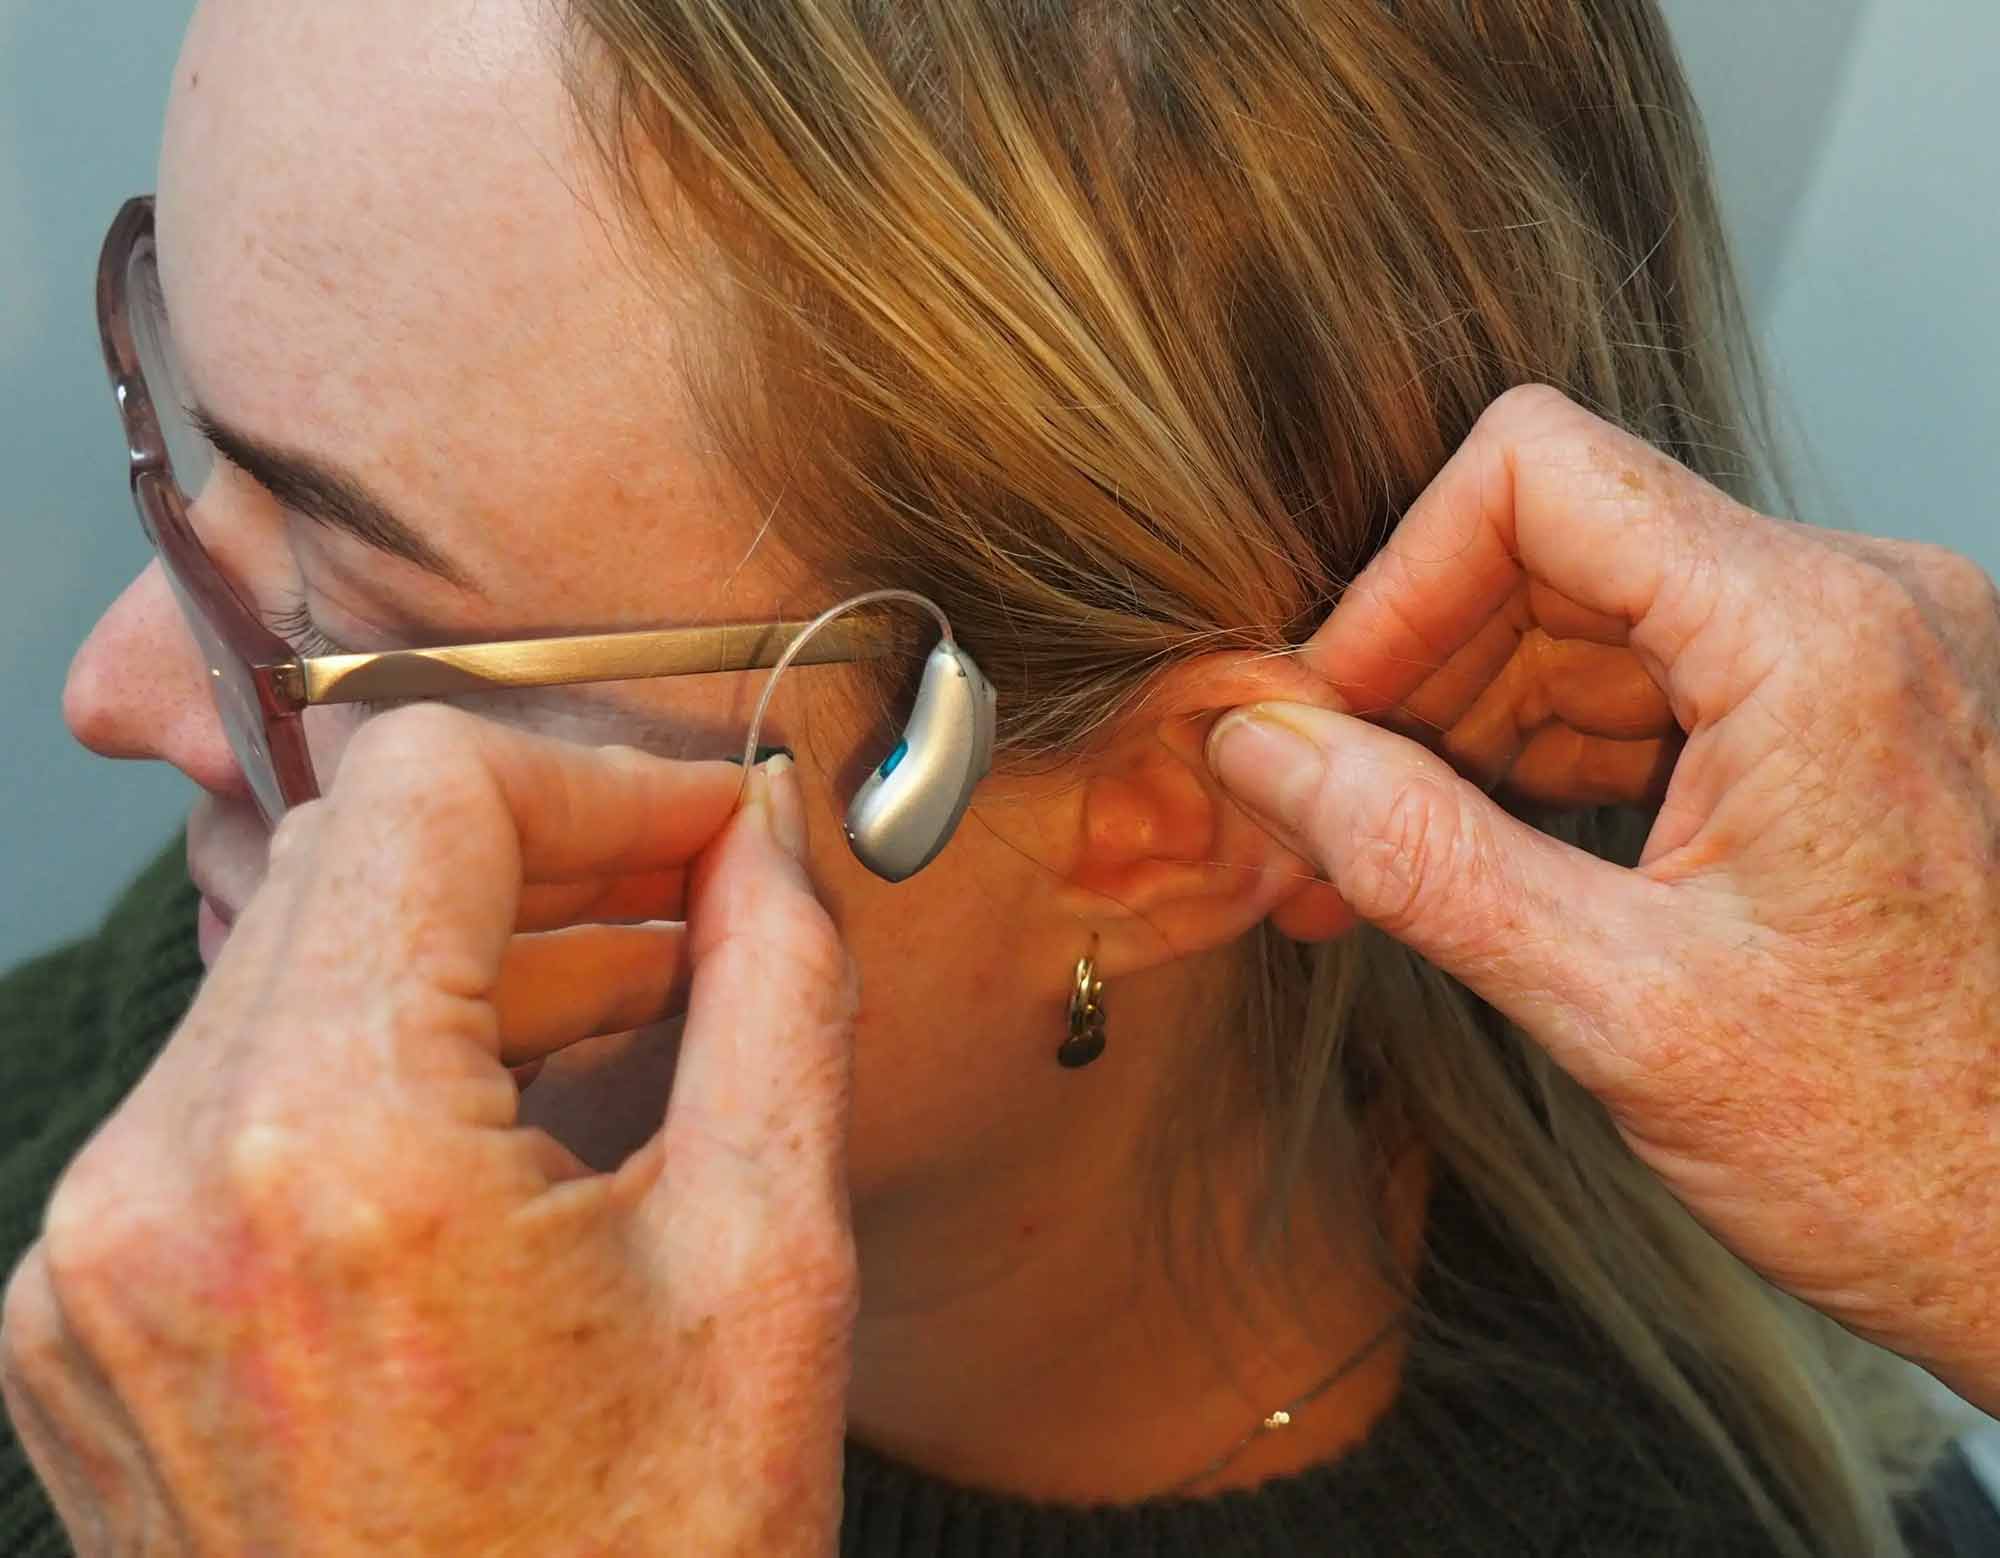 Kvinna tar på sig en hörapparat